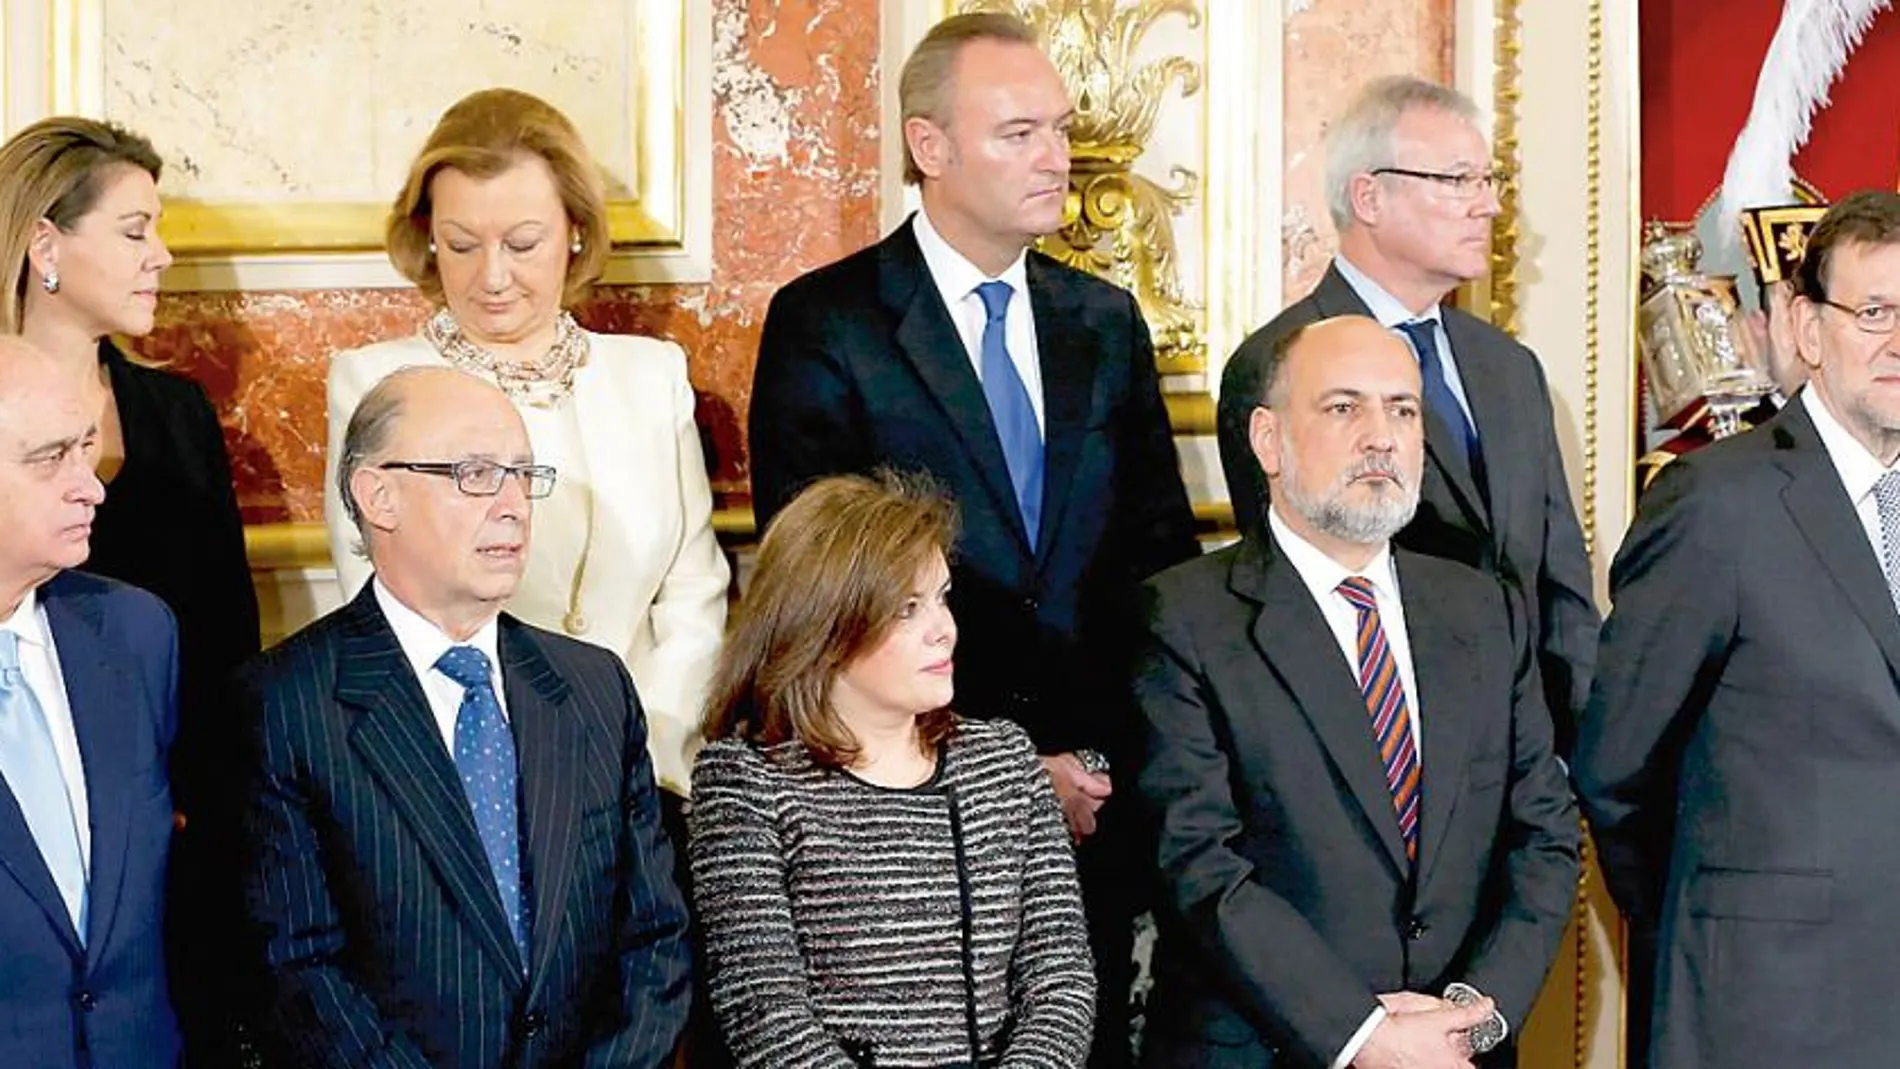 El president de la Generalitat, Alberto Fabra, asistió ayer a los actos de celebración que tuvieron lugar en el Palacio del Congreso de los Diputados en Madrid con motivo del 35 aniversario de la Constitución Española